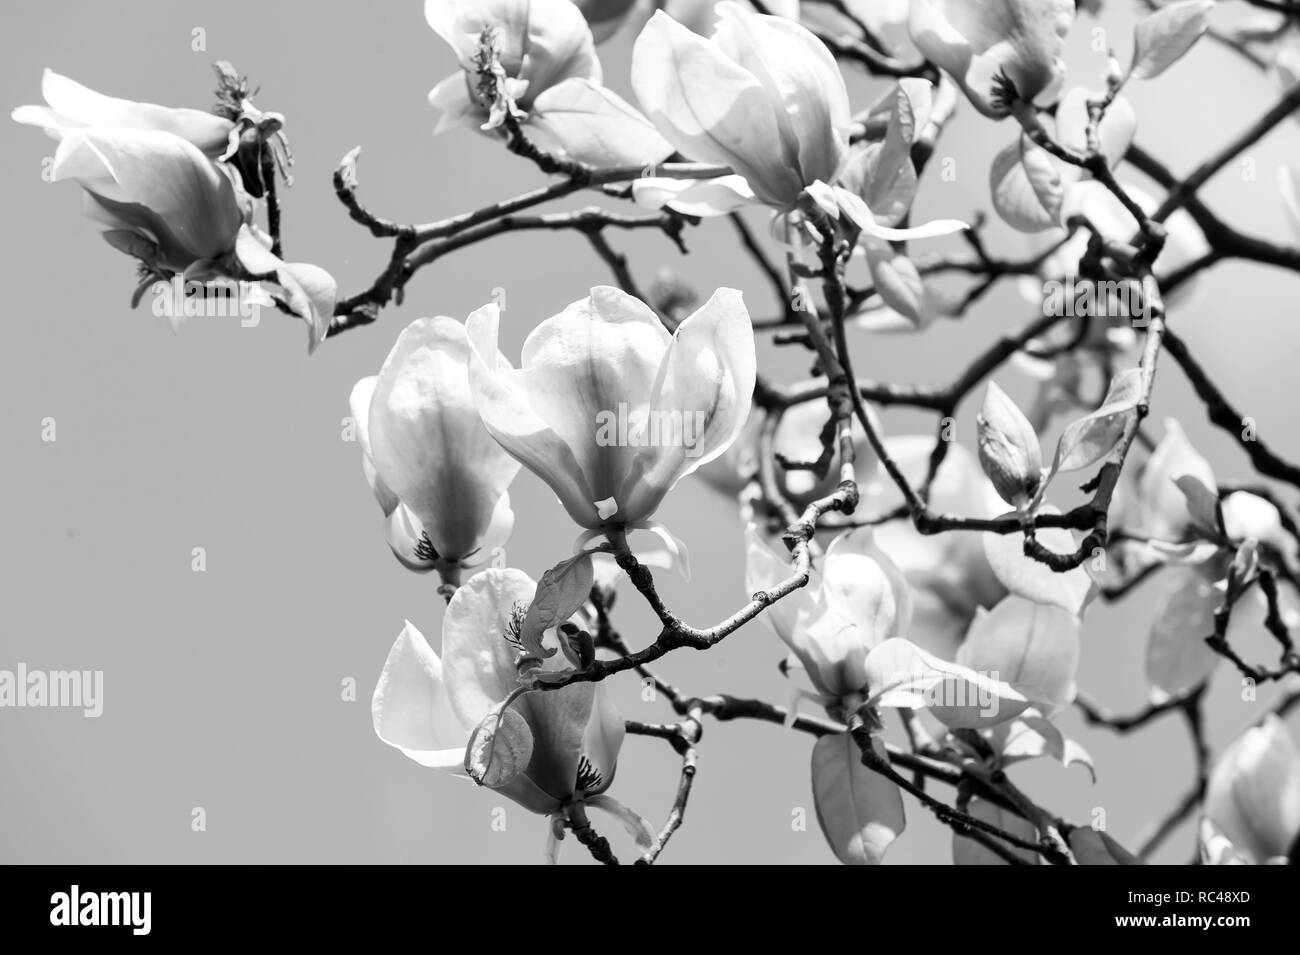 Floraison de fleurs avec pétales violet sur la journée ensoleillée. Magnolia en fleurs sur fond bleu ciel. Concept de la campagne de printemps. Bloom, blossom, la floraison. La nature, la beauté, l'environnement, l'espace de copie Banque D'Images